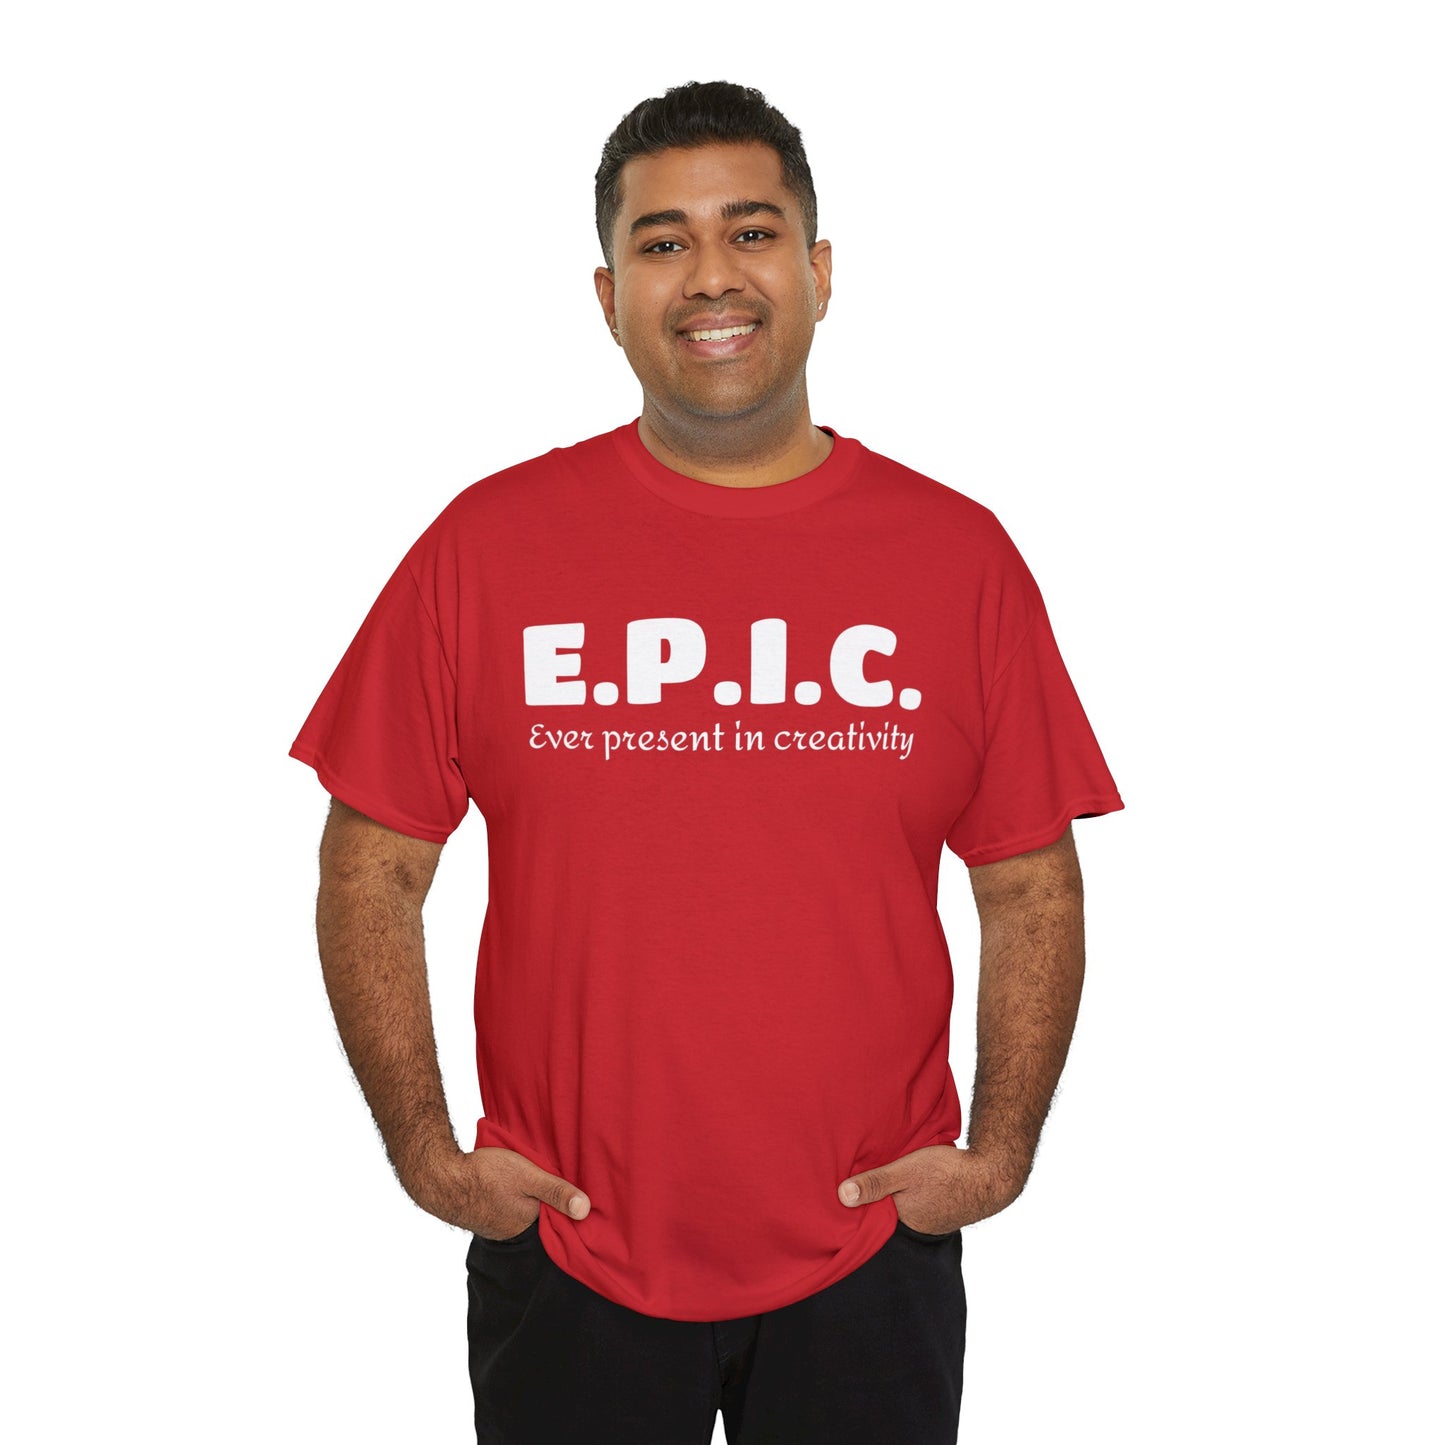 E.P.I.C. t-shirt